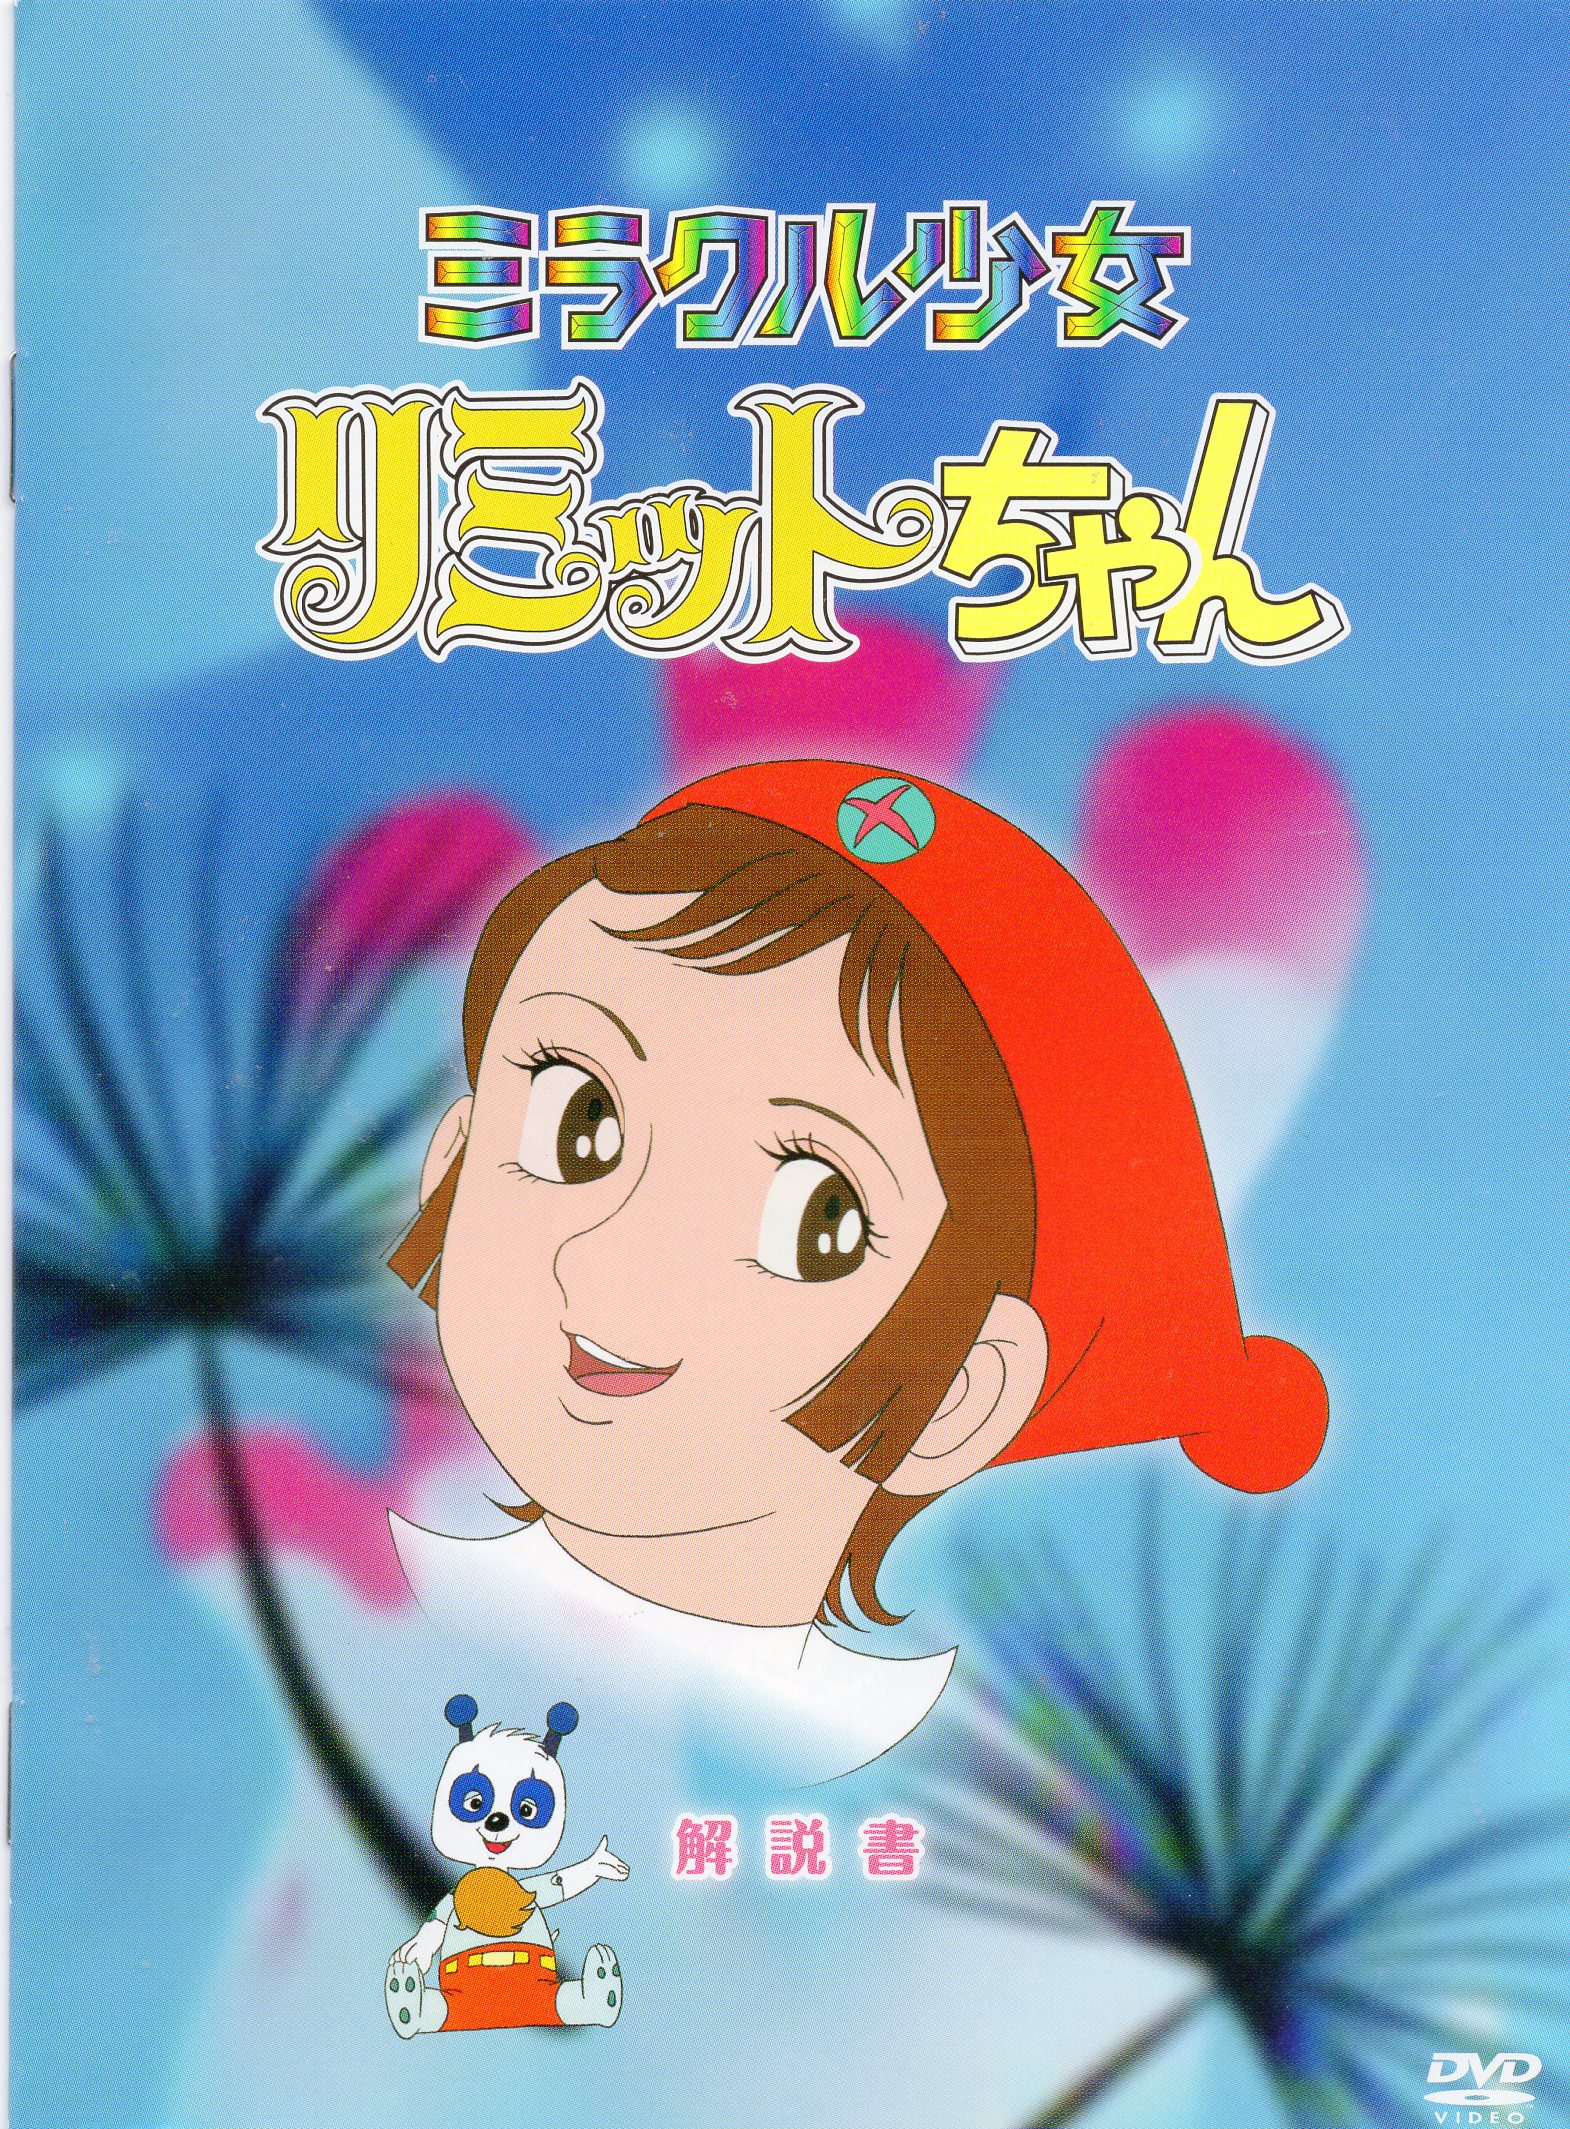 ミラクル少女リミットちゃん DVD-BOX - 映画、ビデオ